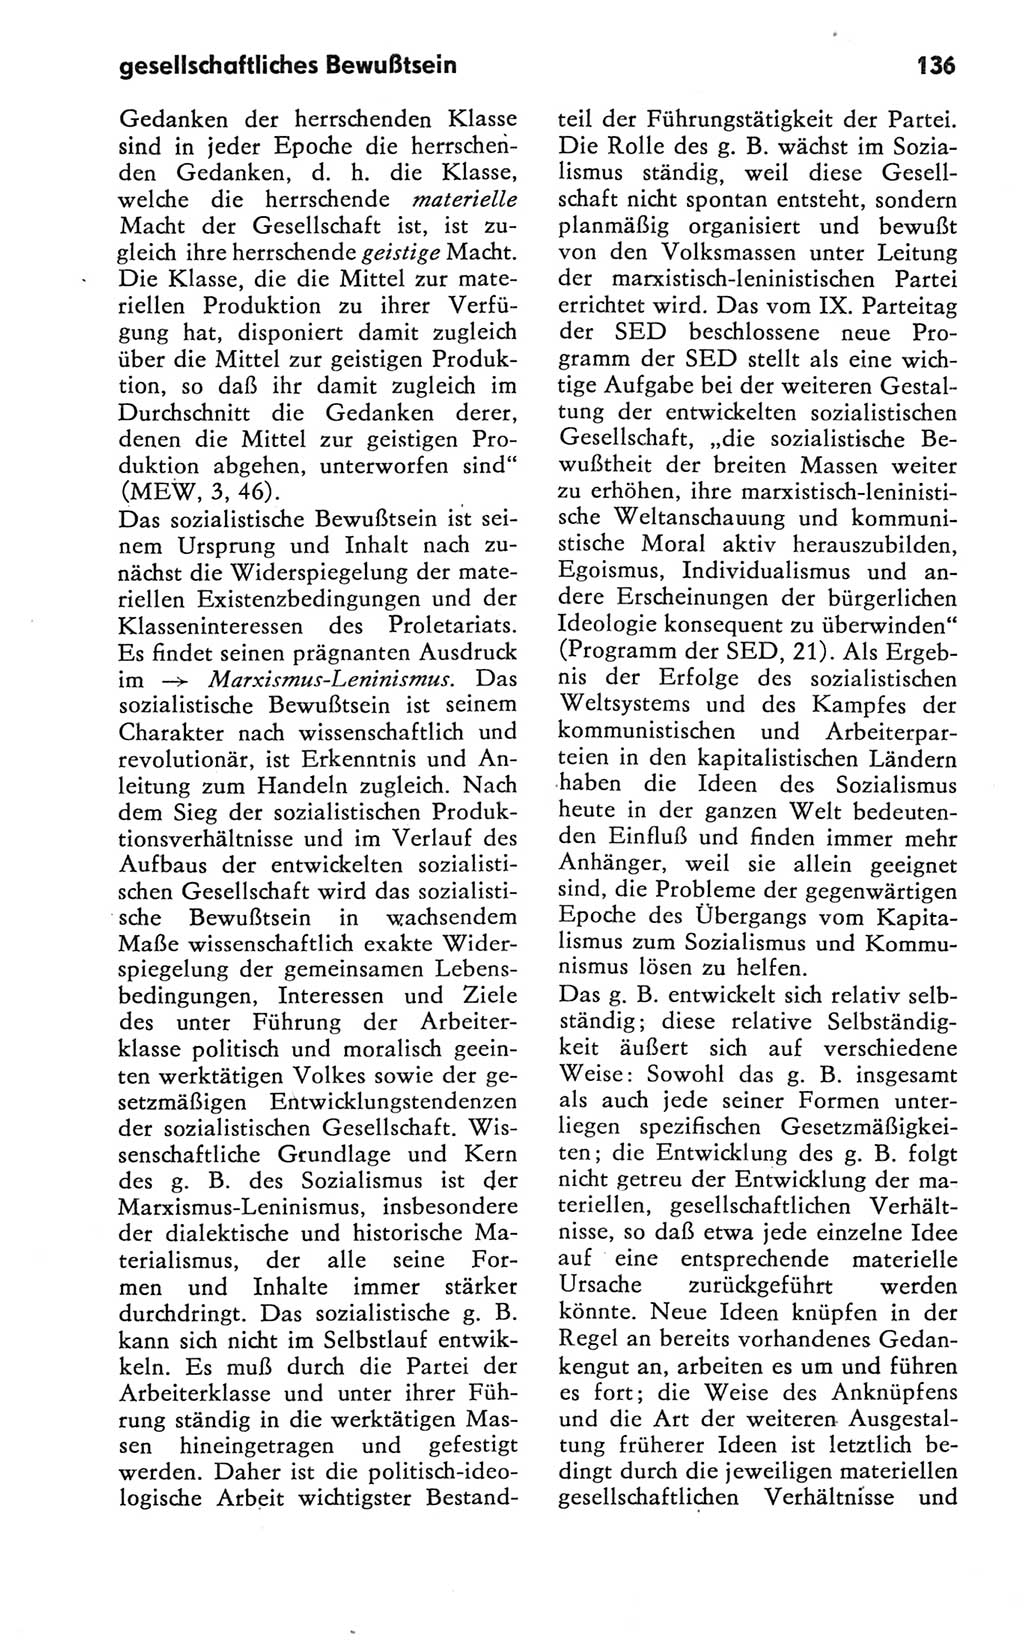 Kleines Wörterbuch der marxistisch-leninistischen Philosophie [Deutsche Demokratische Republik (DDR)] 1981, Seite 136 (Kl. Wb. ML Phil. DDR 1981, S. 136)